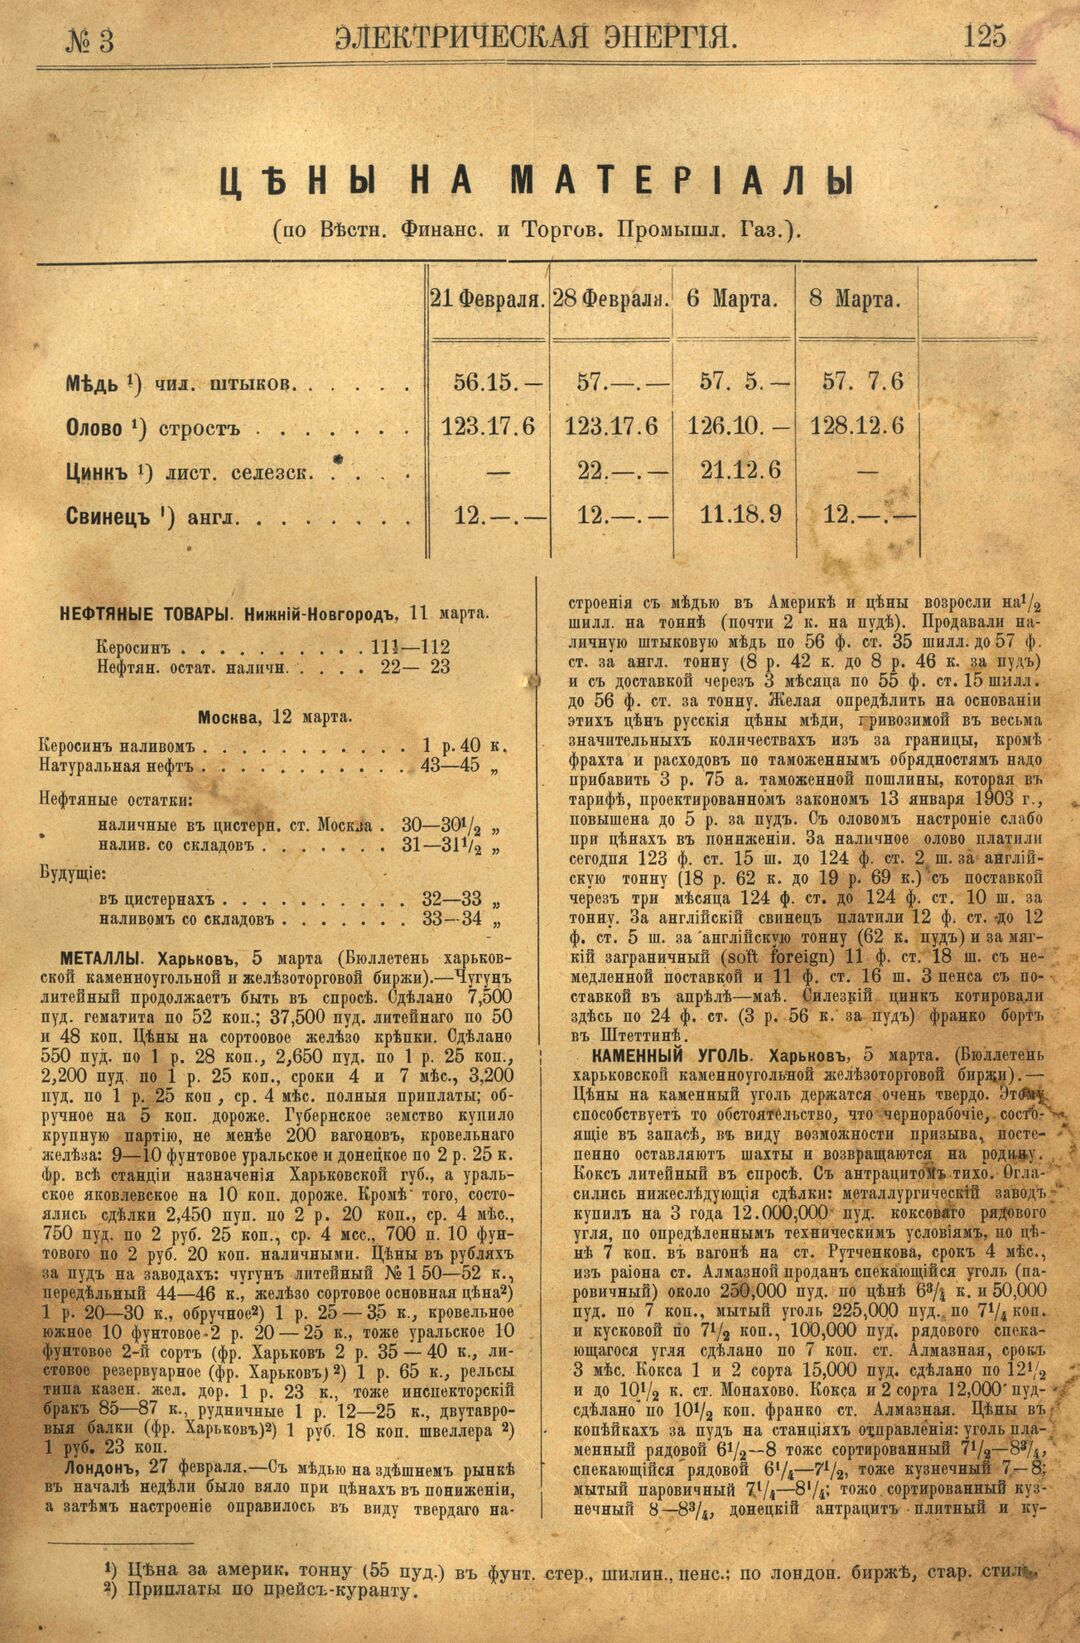 Рис. 1. Журнал Электрическая Энергiя, 3 номер, март, 1904 года, страница 125